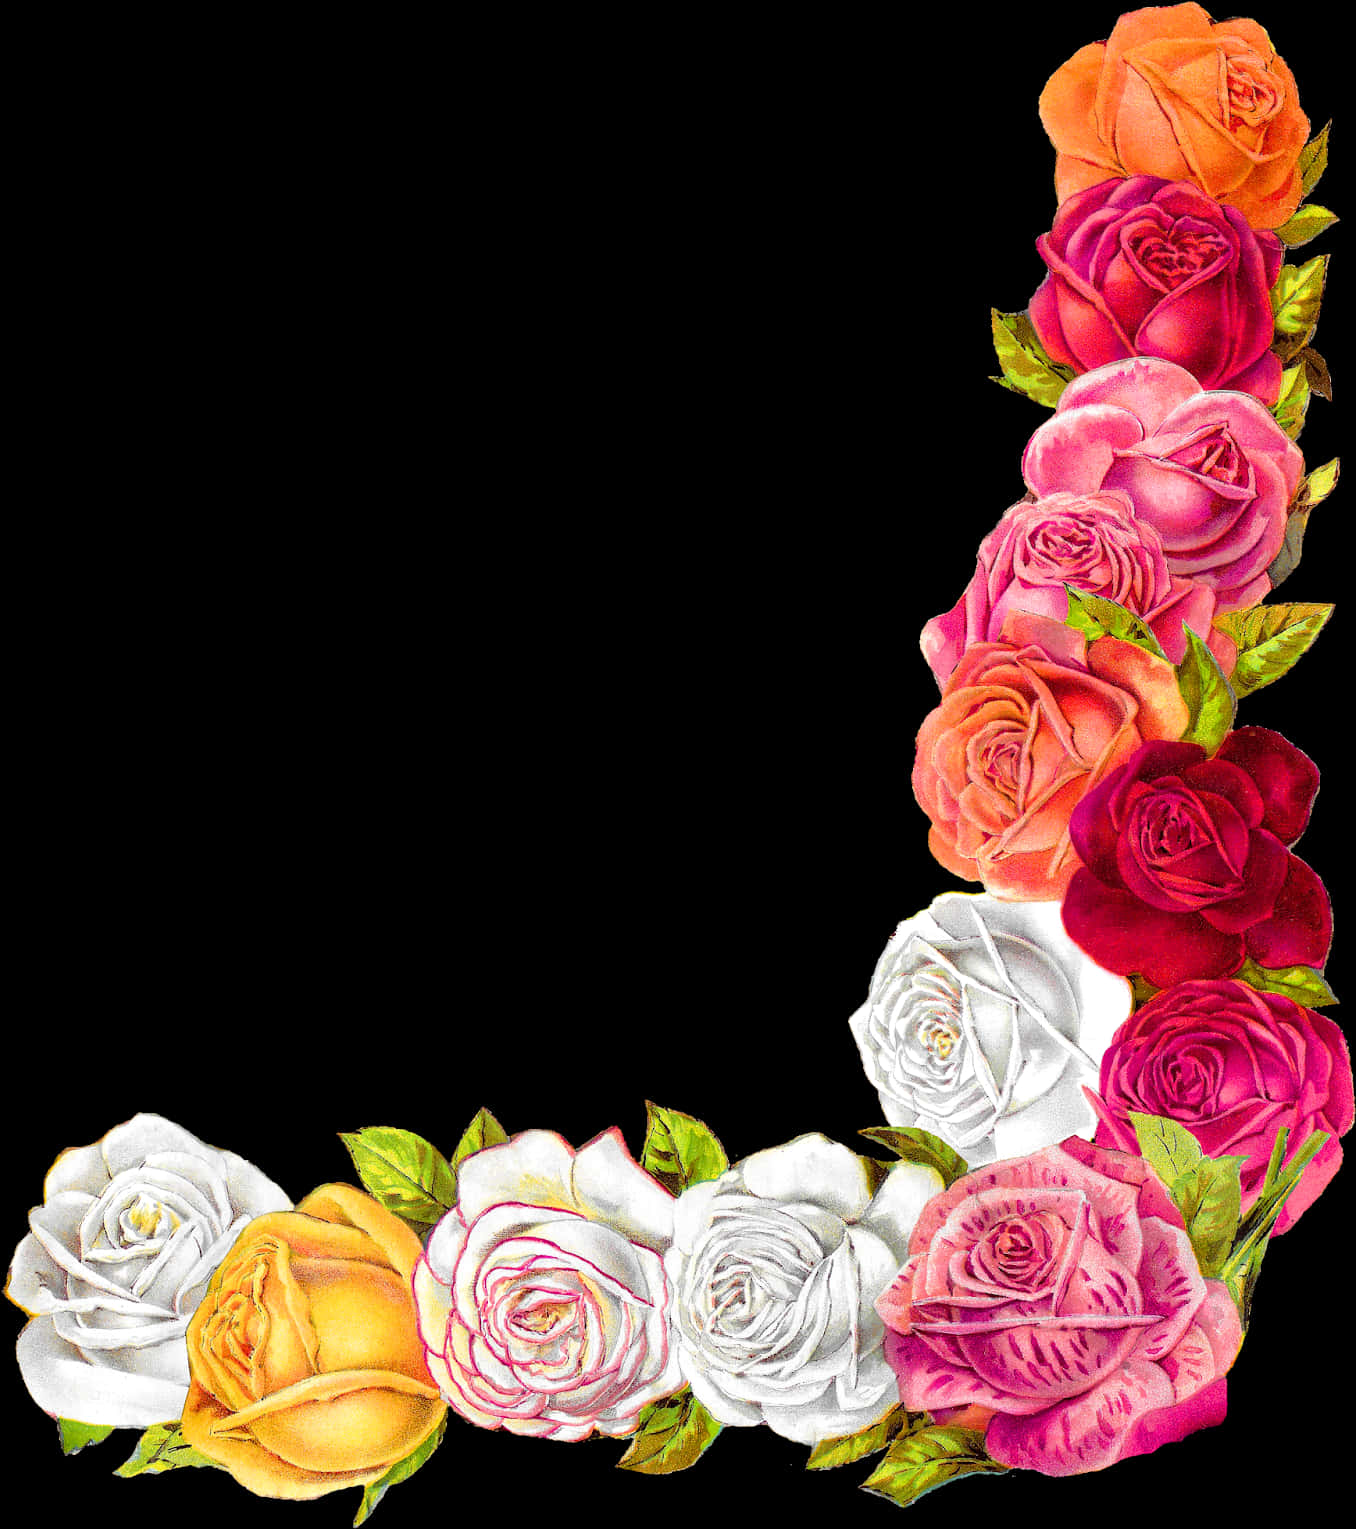 Colorful Rose Border Design PNG image